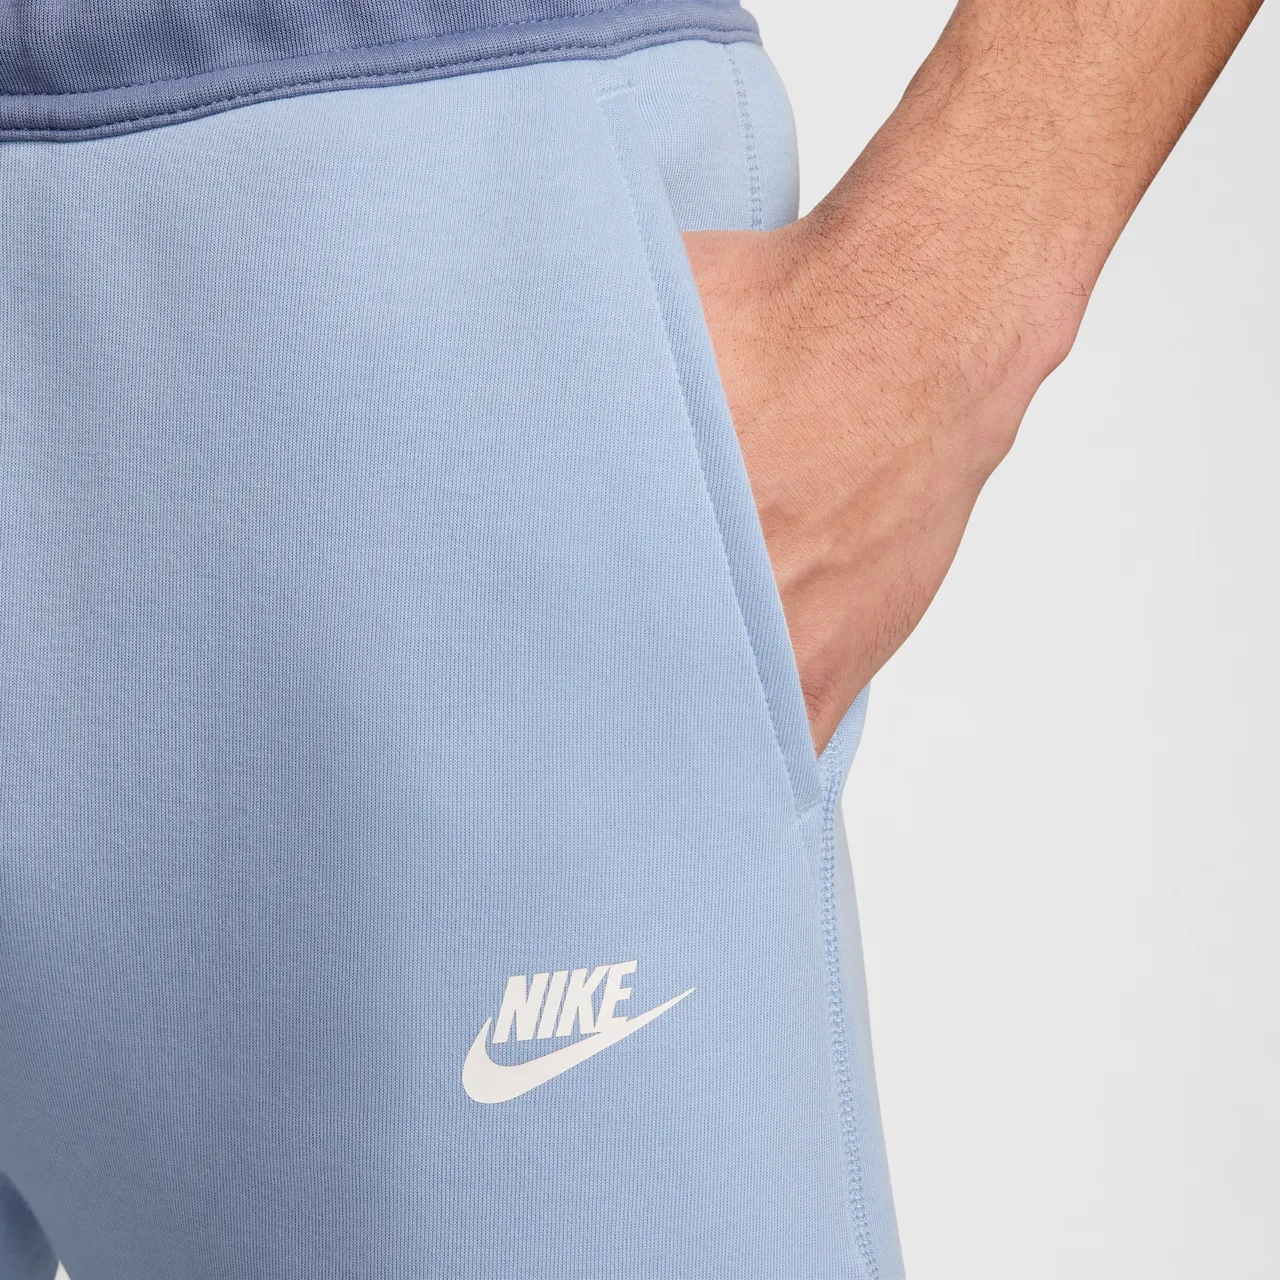 Nike Sportswear Tech Fleece Herren-Jogger - Blau